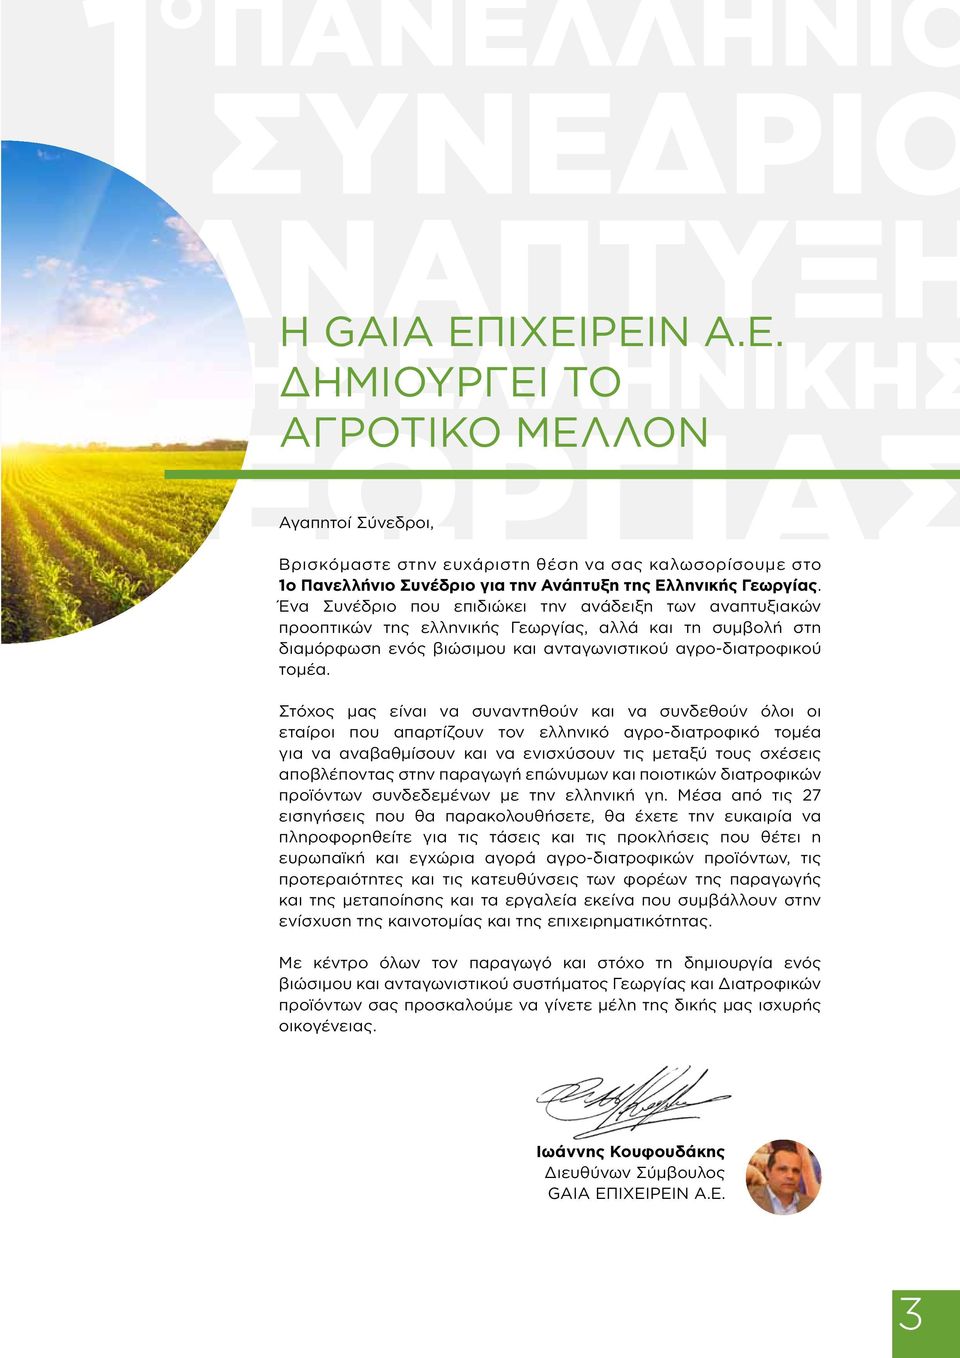 Στόχος μας είναι να συναντηθούν και να συνδεθούν όλοι οι εταίροι που απαρτίζουν τον ελληνικό αγρο-διατροφικό τομέα για να αναβαθμίσουν και να ενισχύσουν τις μεταξύ τους σχέσεις αποβλέποντας στην